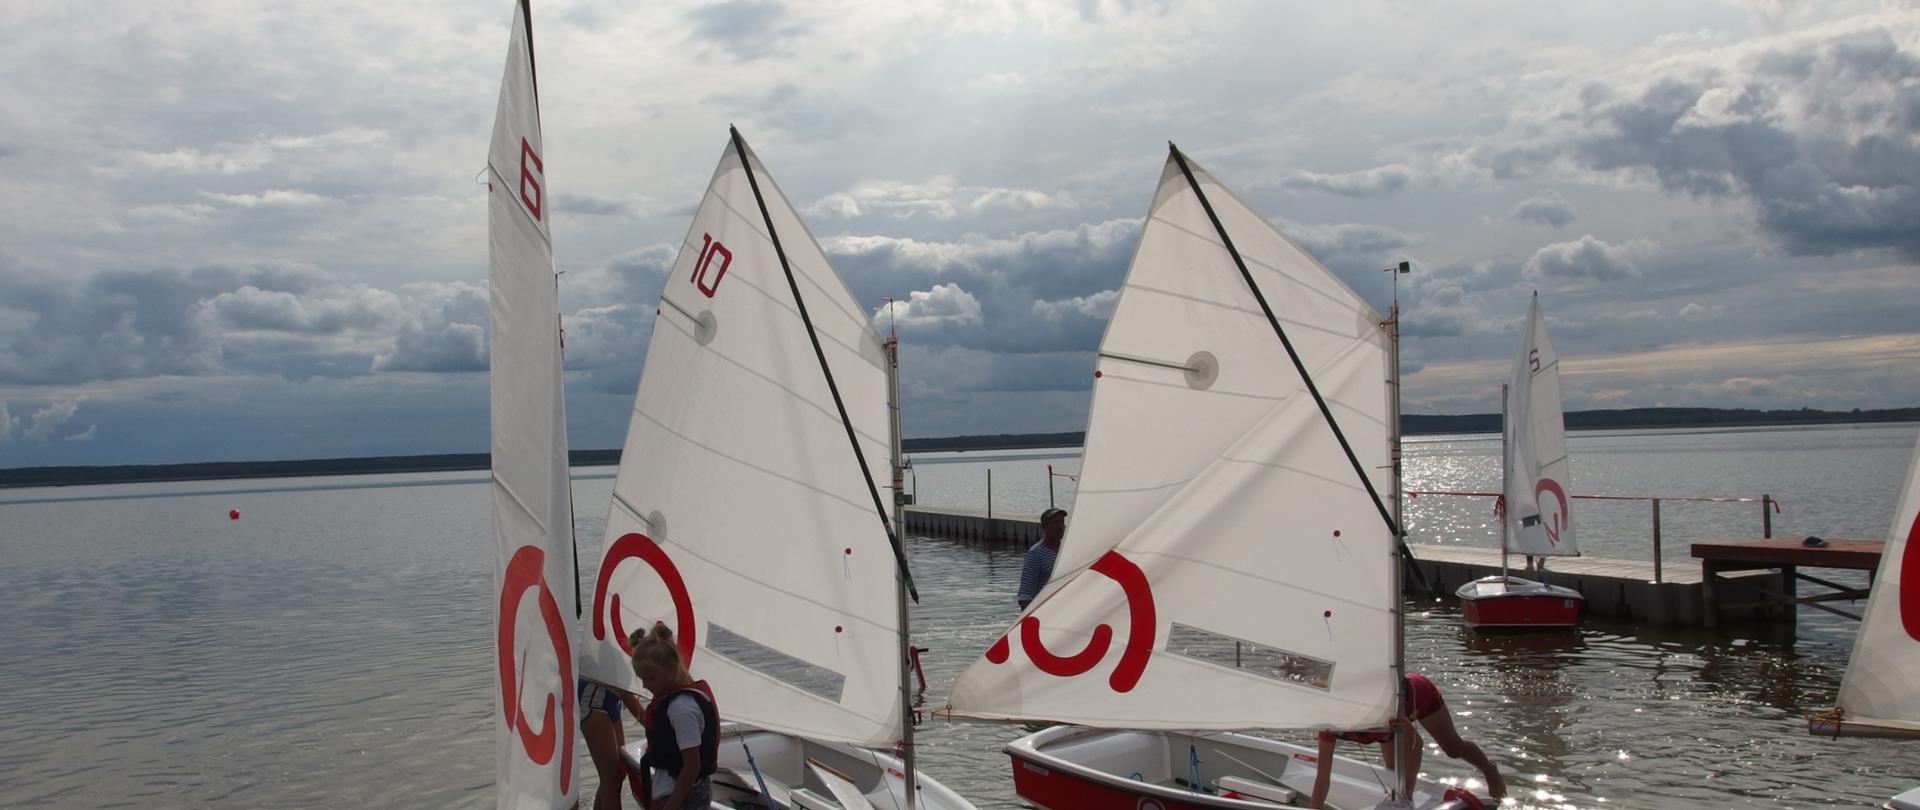 Cztery łódki typu optimist z żaglami z logo Polska pomoc na wodzie